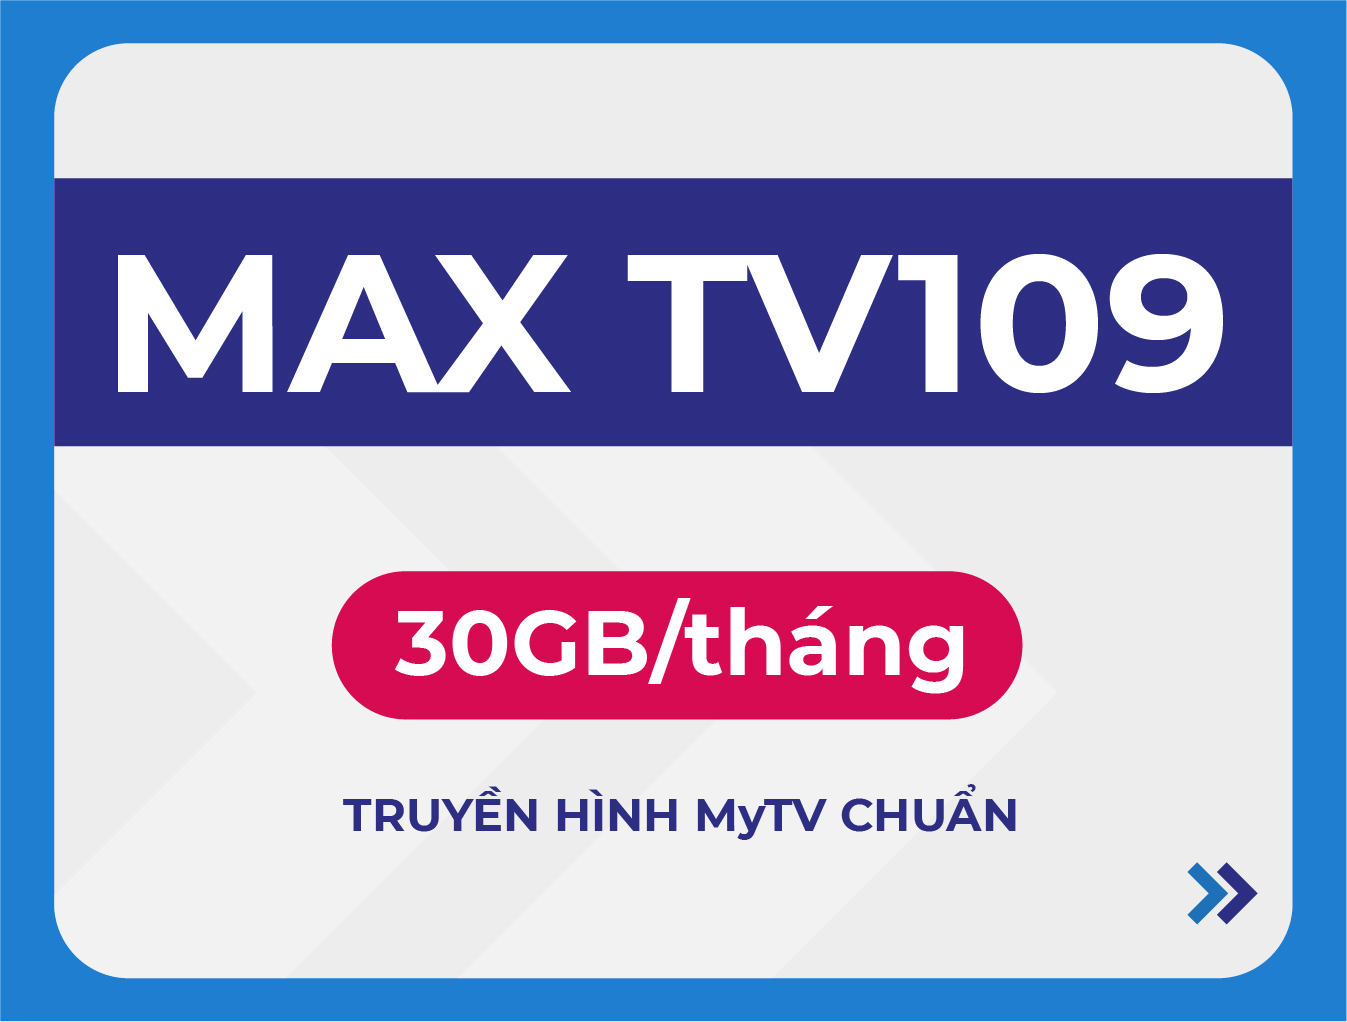 MAX TV109